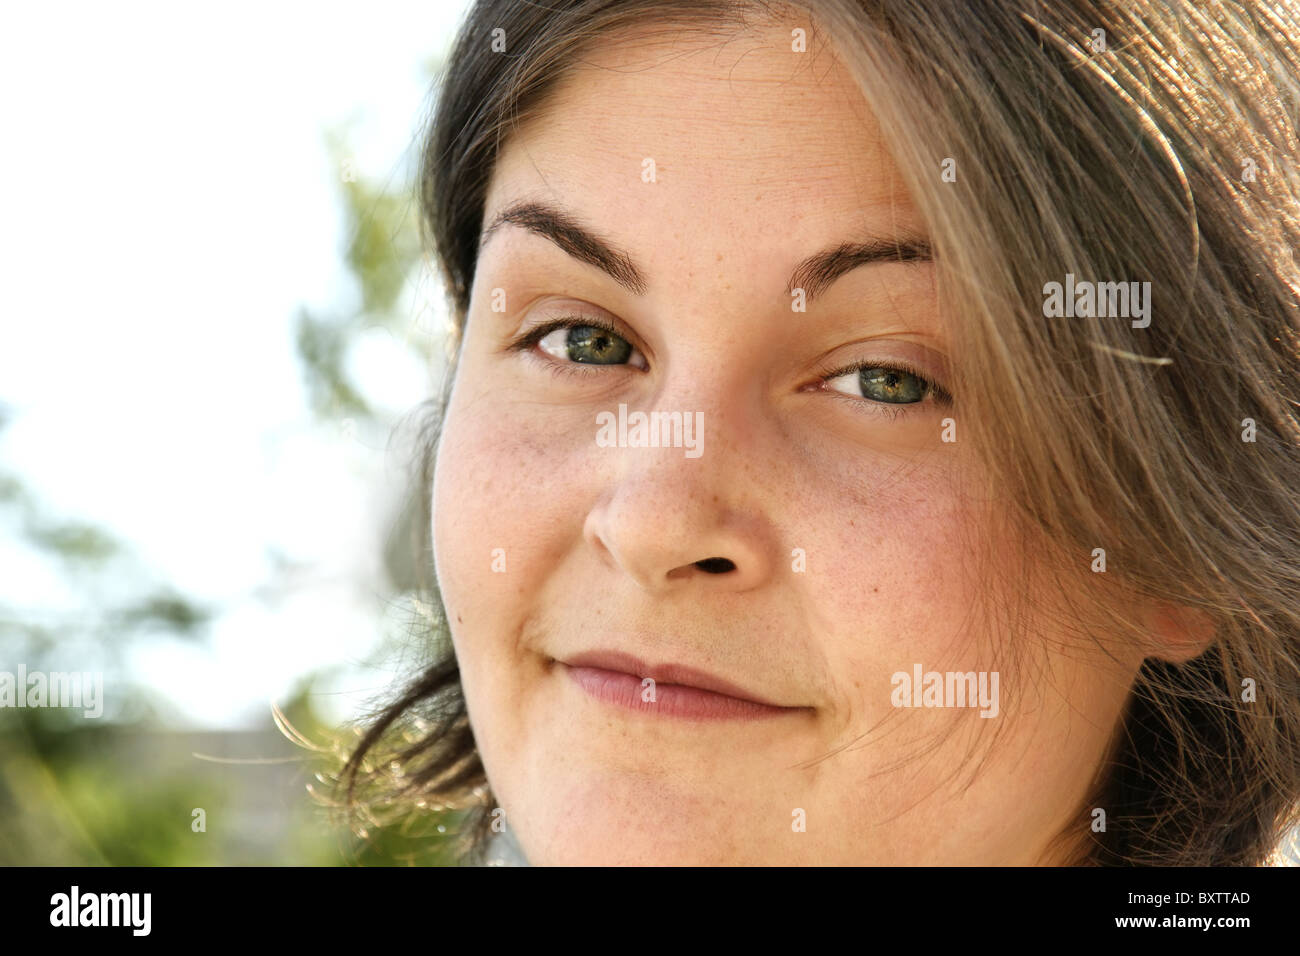 Real giovane donna ritratto preso al di fuori, ha un po' sarcastico sorriso con le sopracciglia sollevate. Gli occhi sono multicolori. Foto Stock